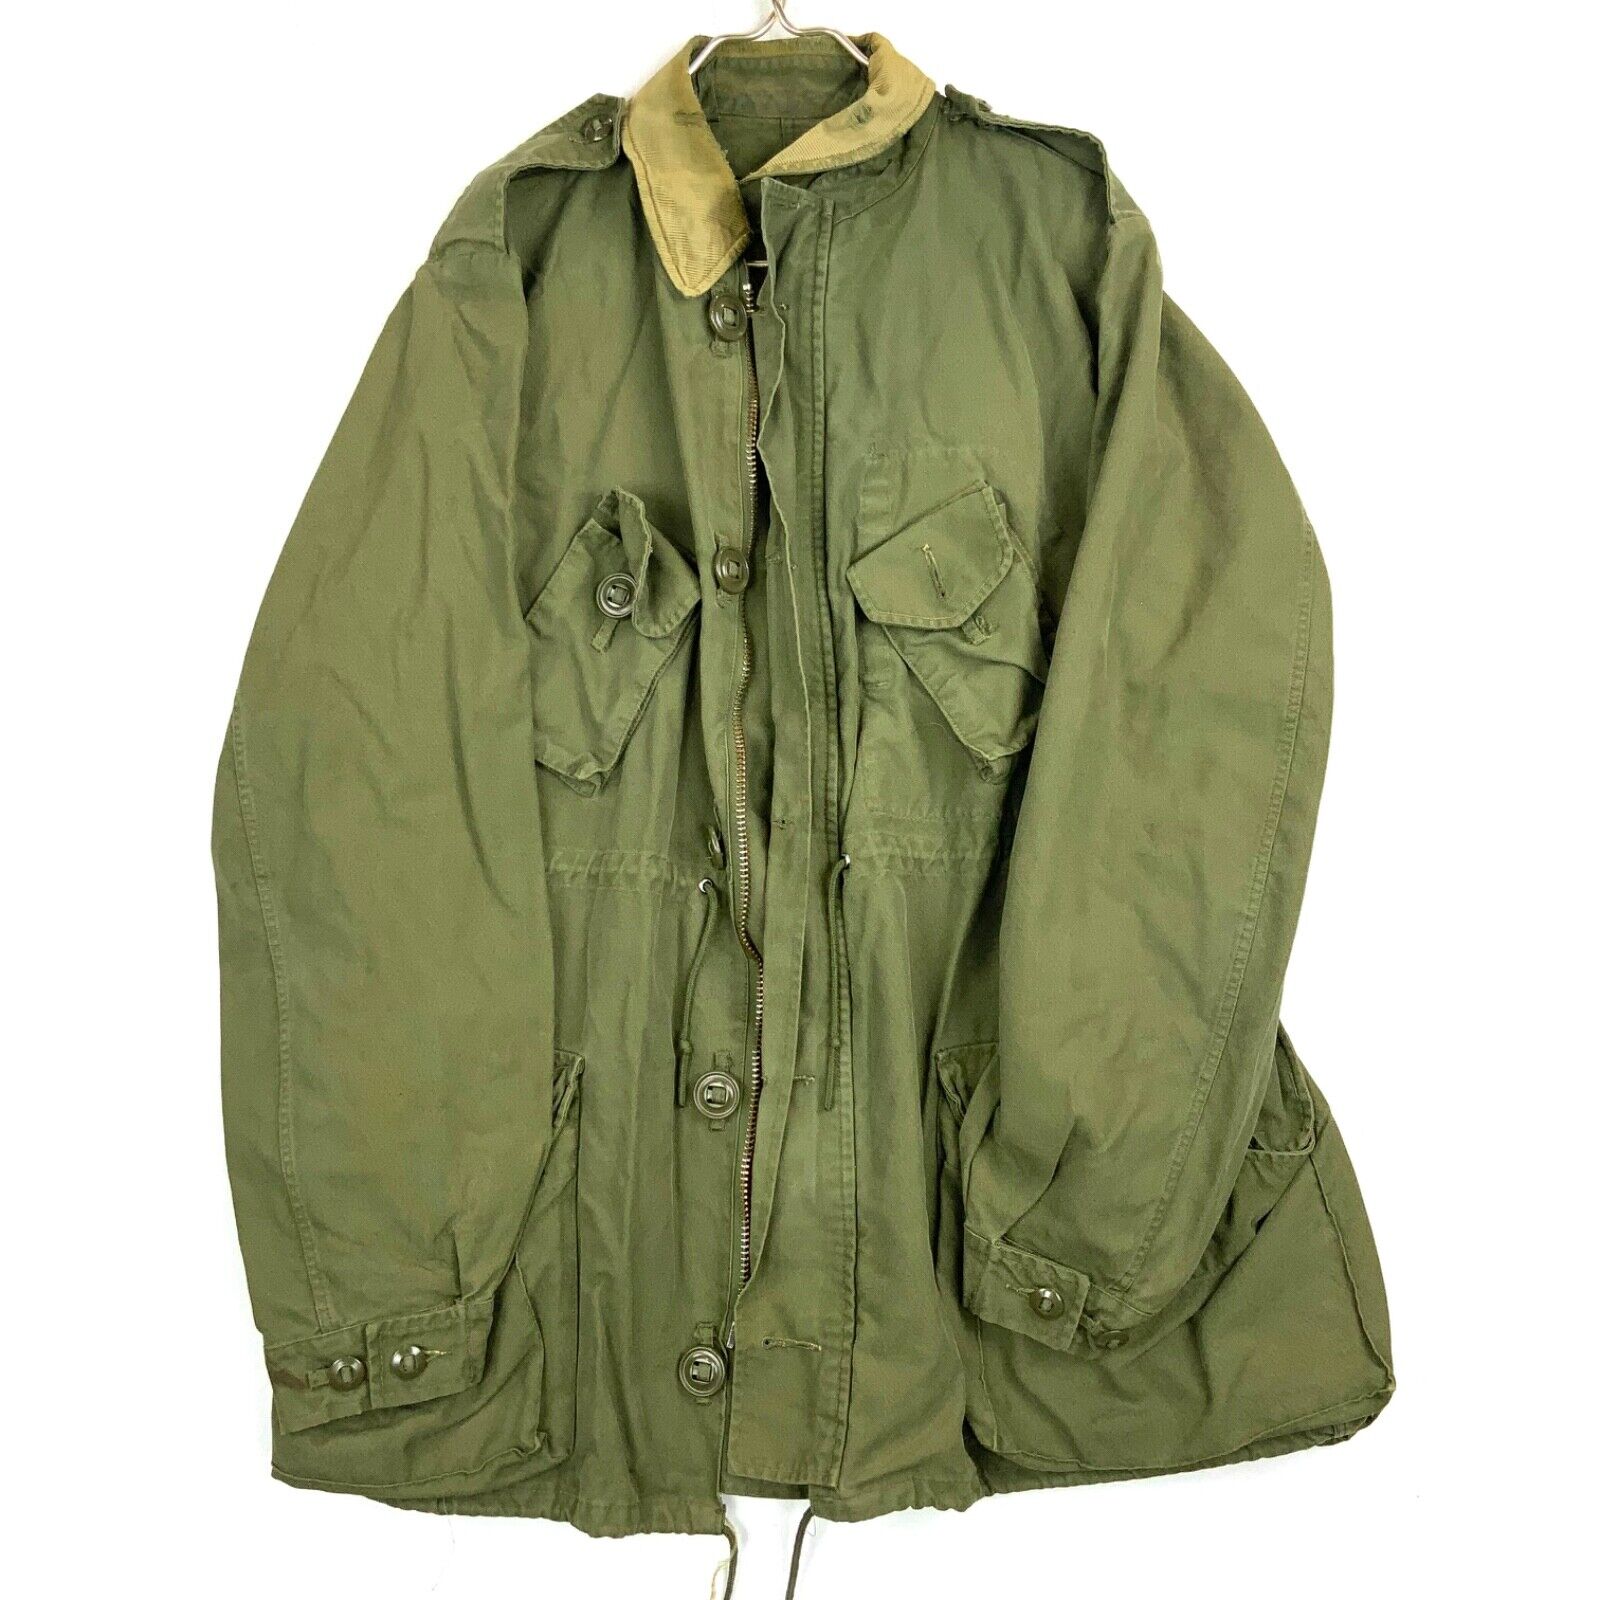 Vintage Canadian Military Og-107 Field Jacket Size XL Green